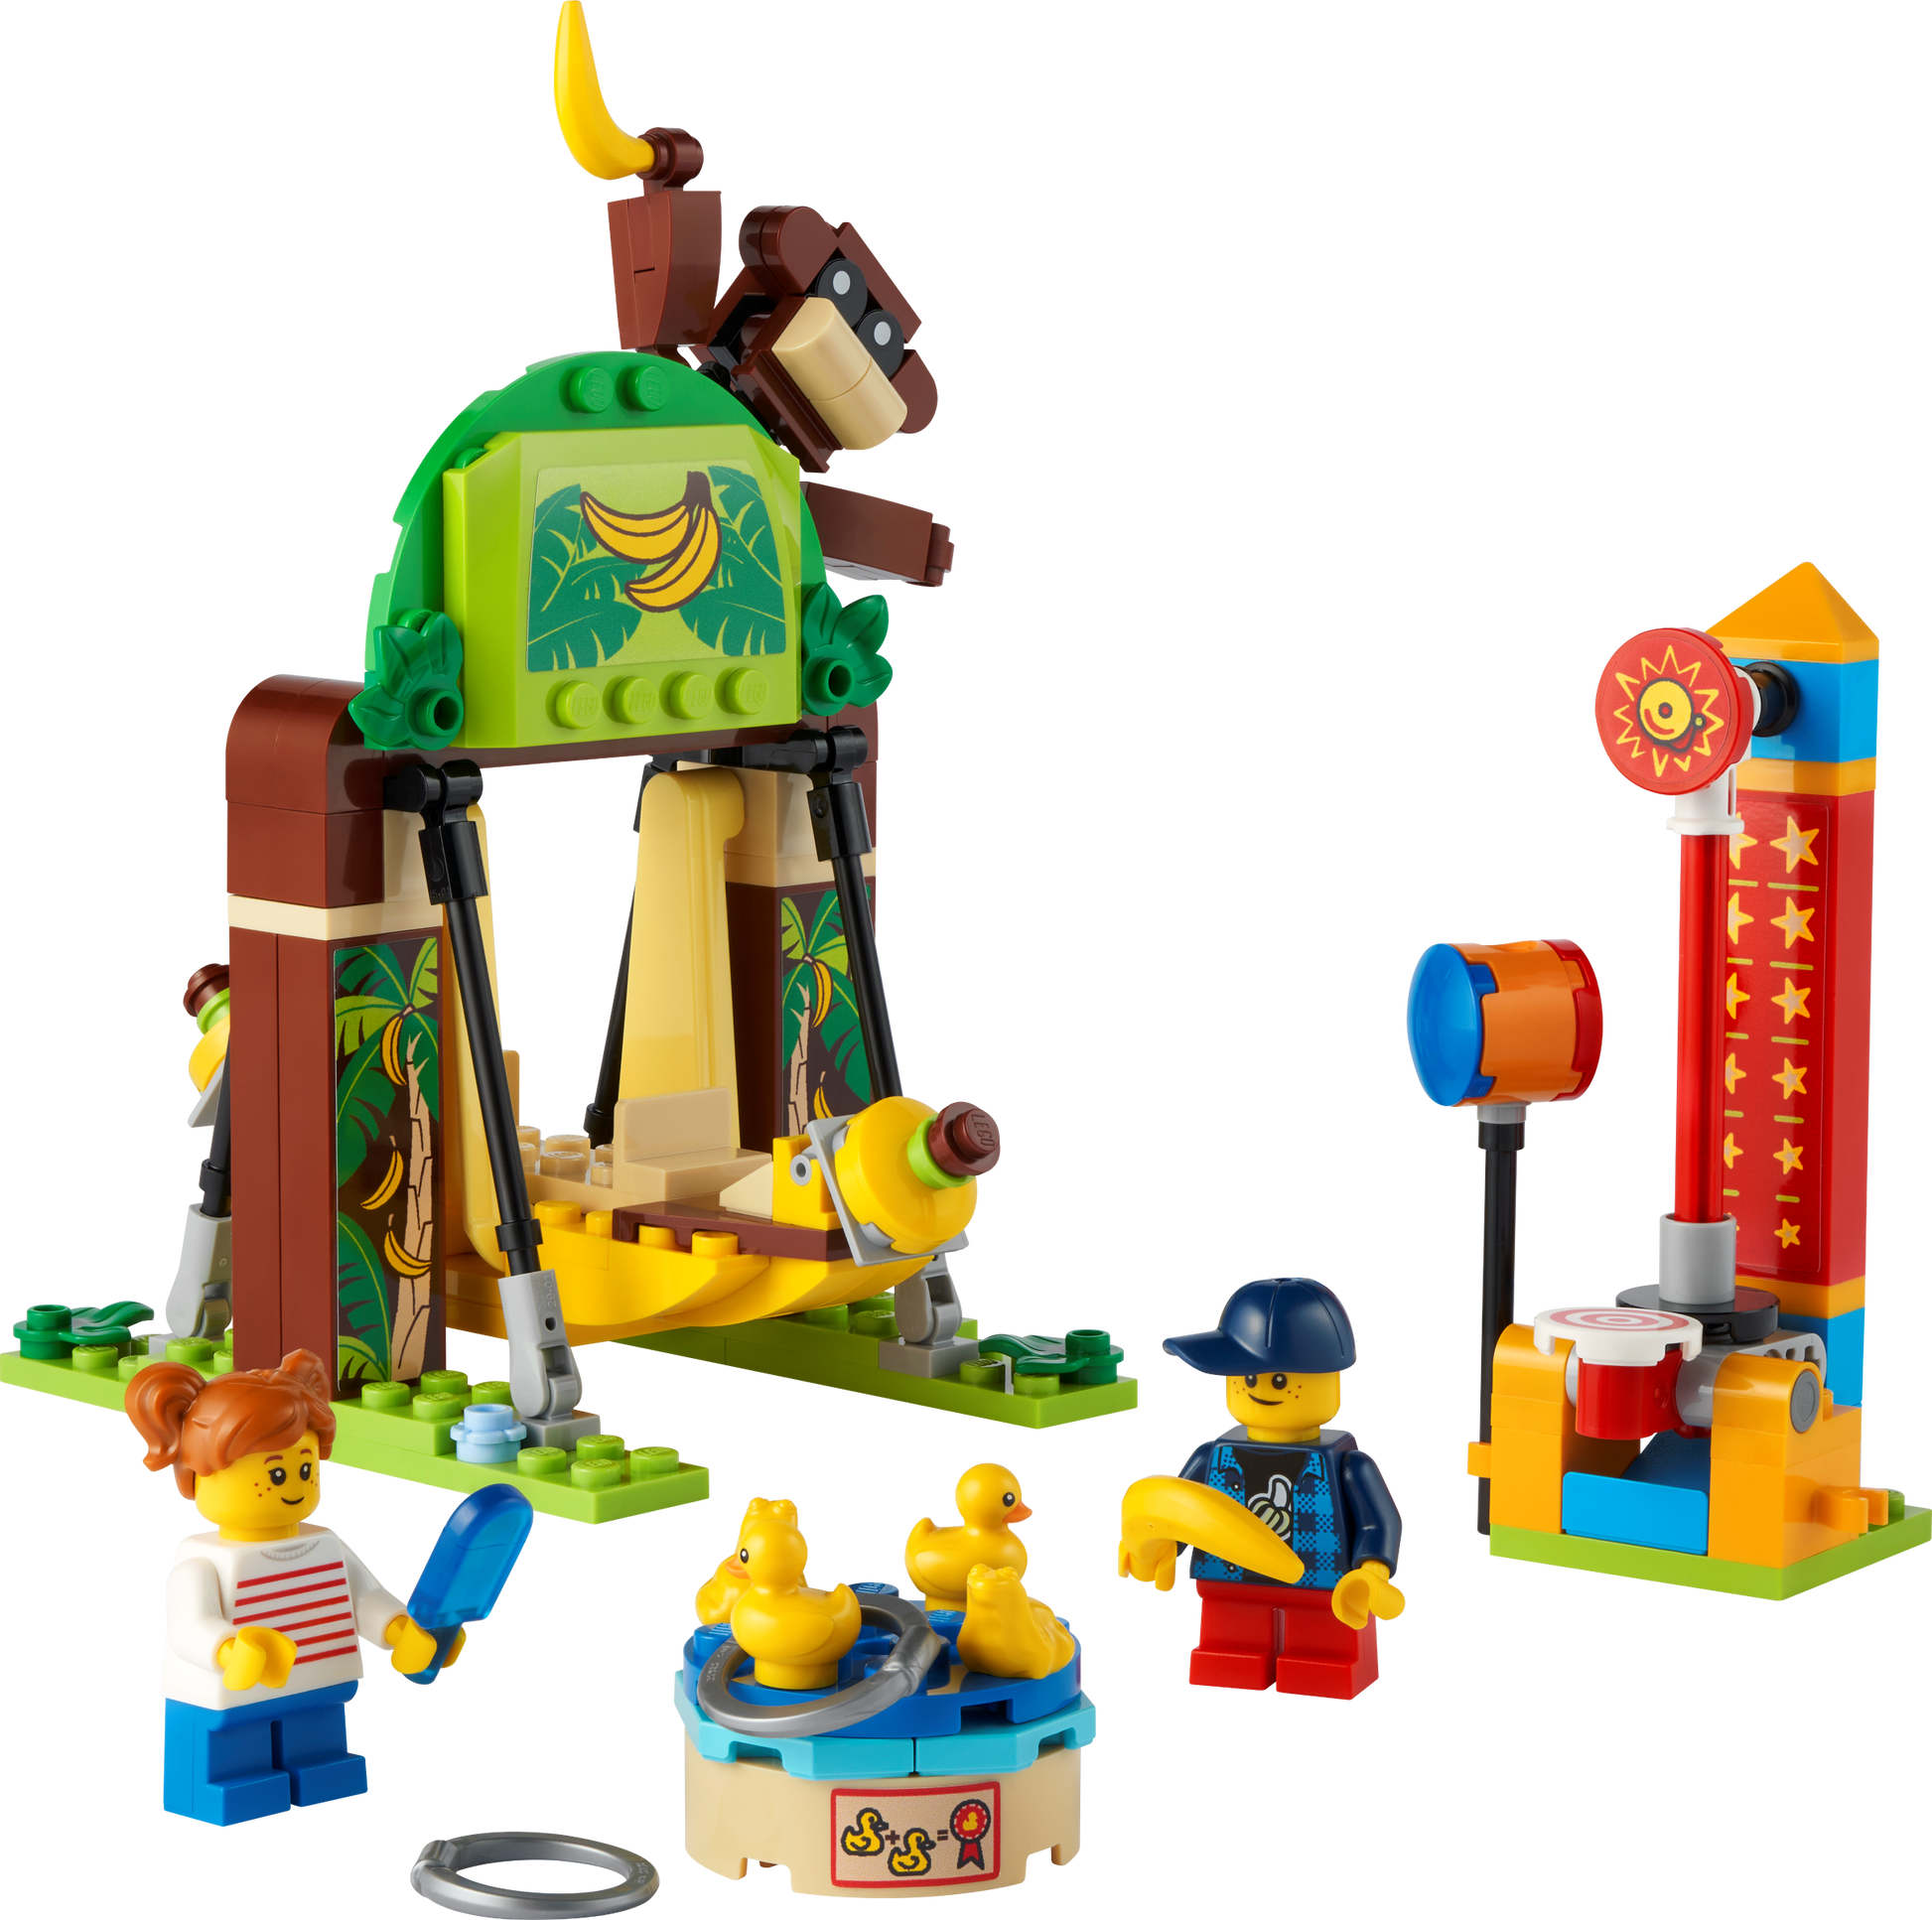 LEGO® set 40529